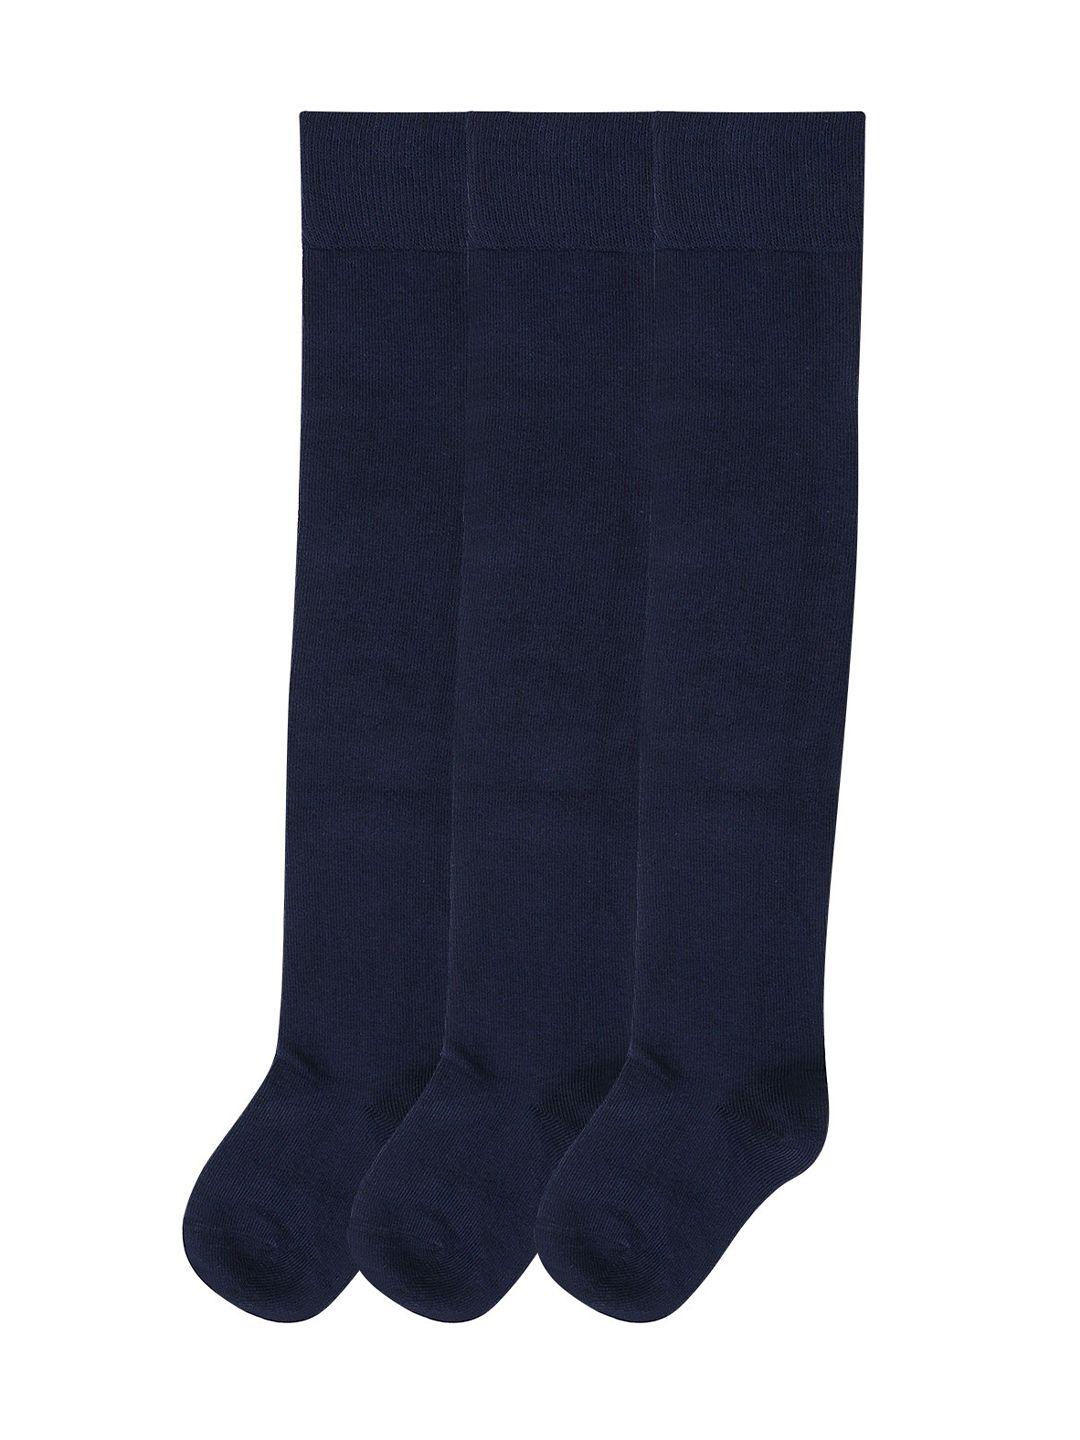 Bonjour Girls Pack Of 3 Navy Blue Solid Knee Length Socks